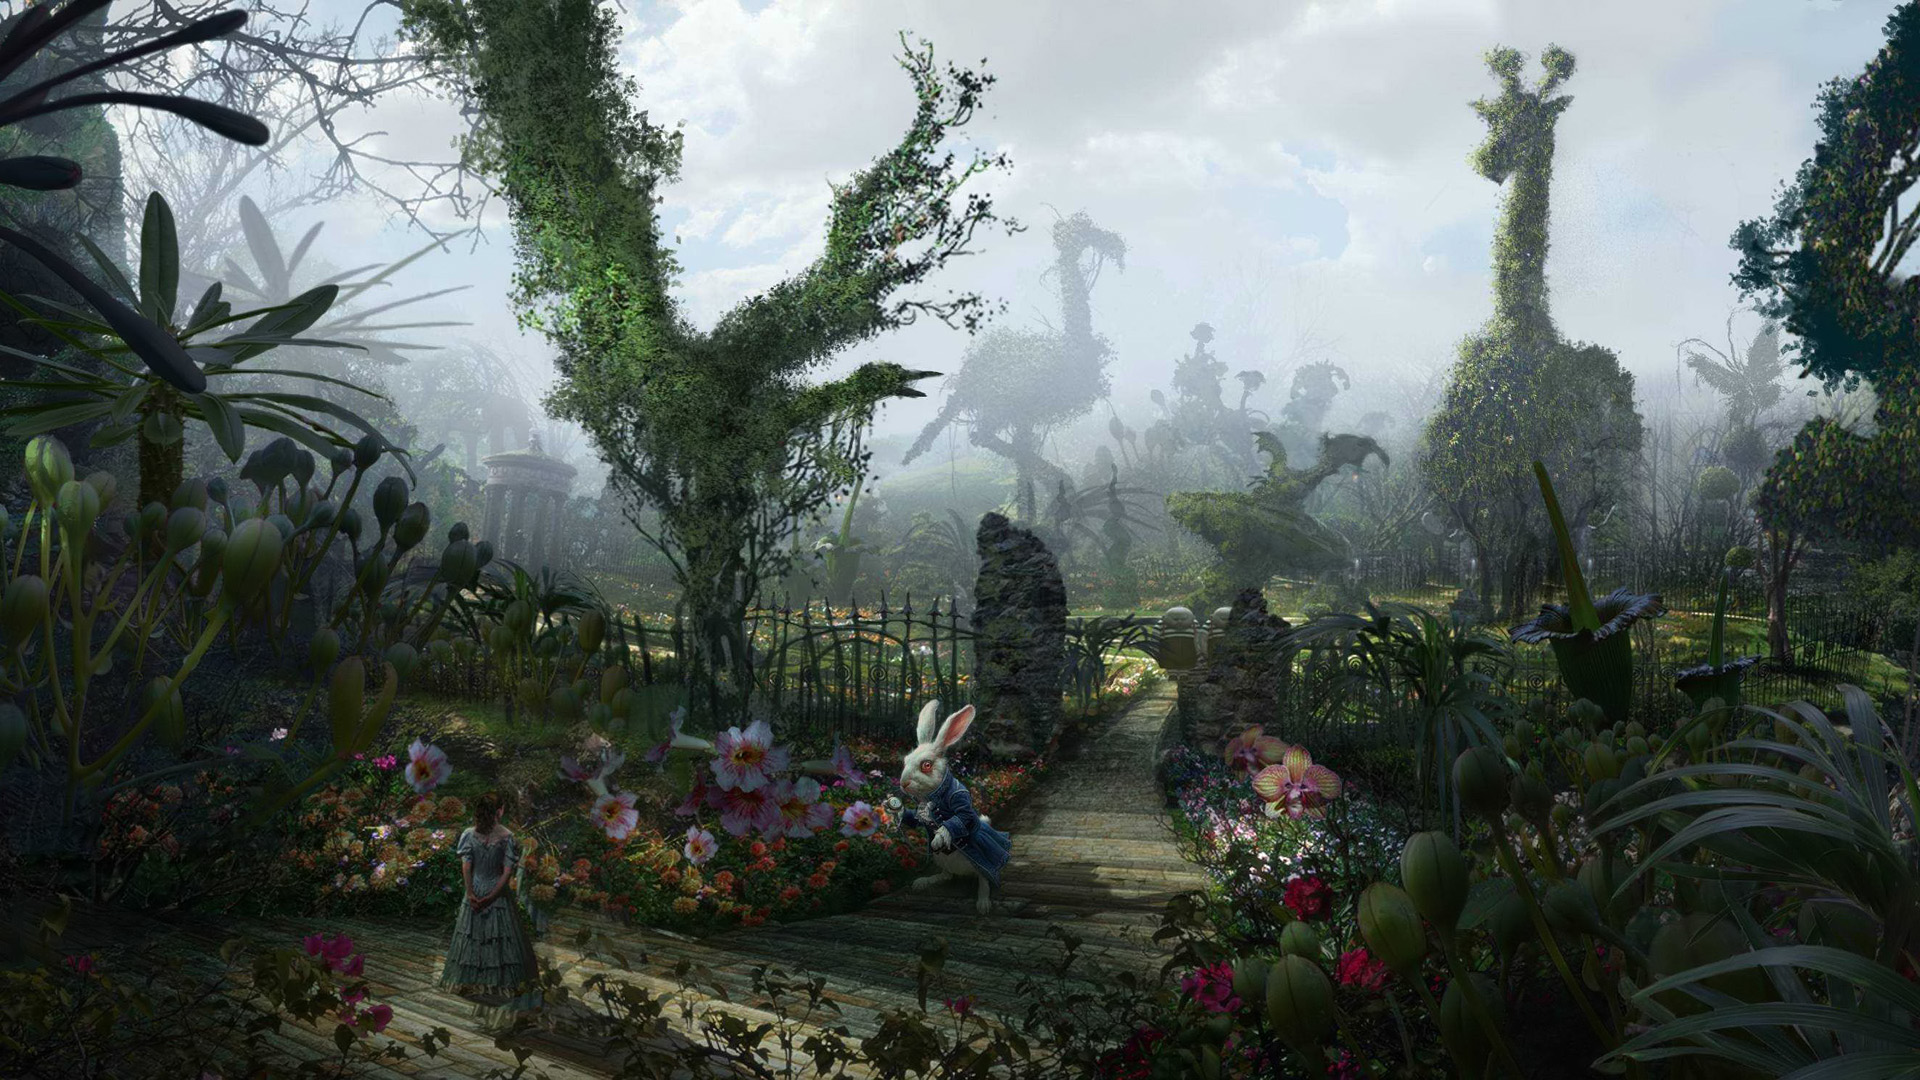 HD Alice in Wonderland Wallpaper | PixelsTalk.Net